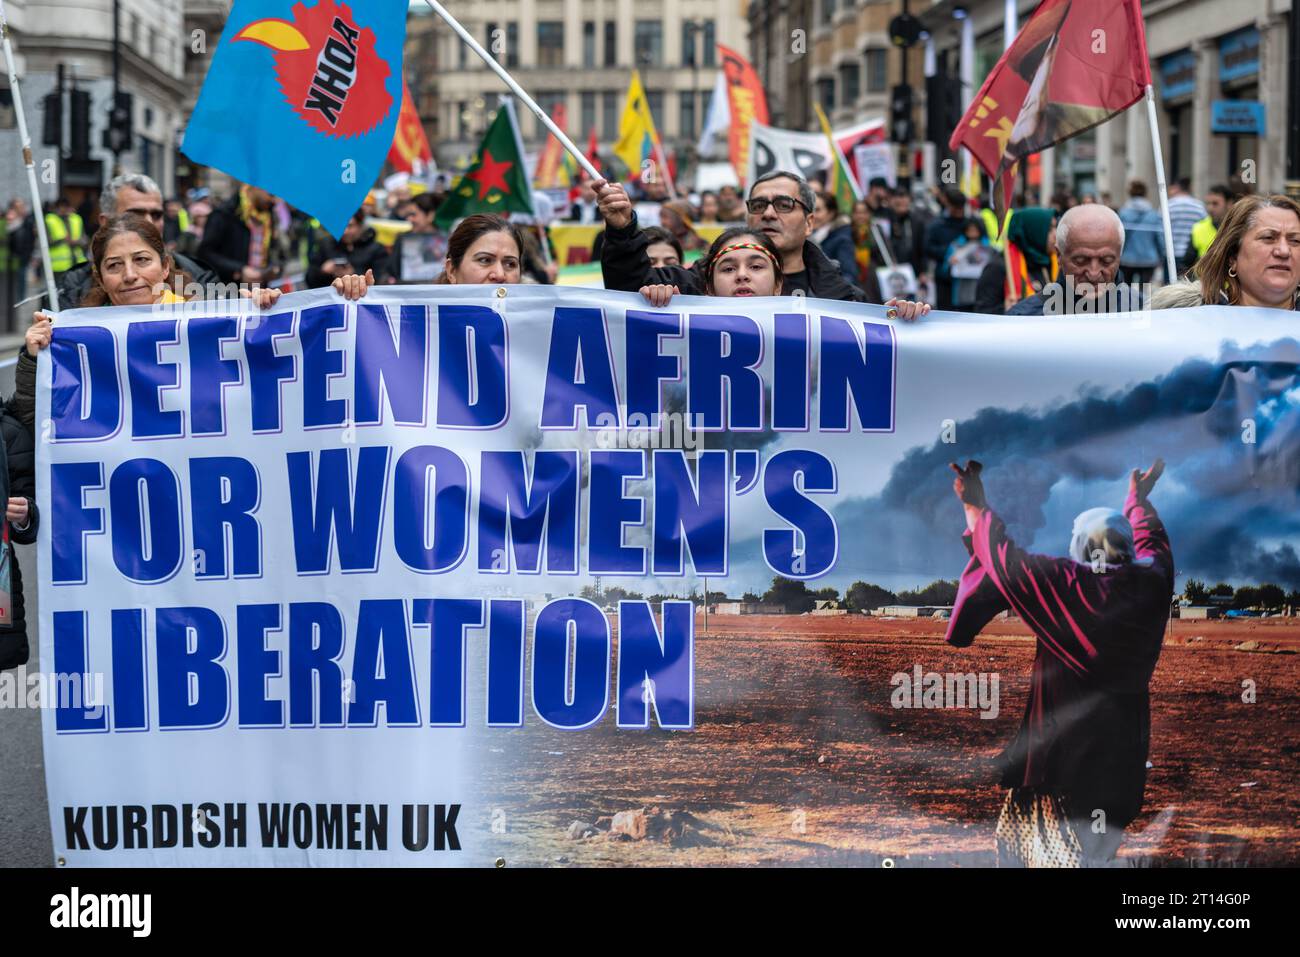 Manifestazione contro presunti crimini di guerra turchi ad Afrin, una città curda in Siria. Protesta a Londra, Regno Unito. Si chiama Defend Afrin. La liberazione delle donne Foto Stock